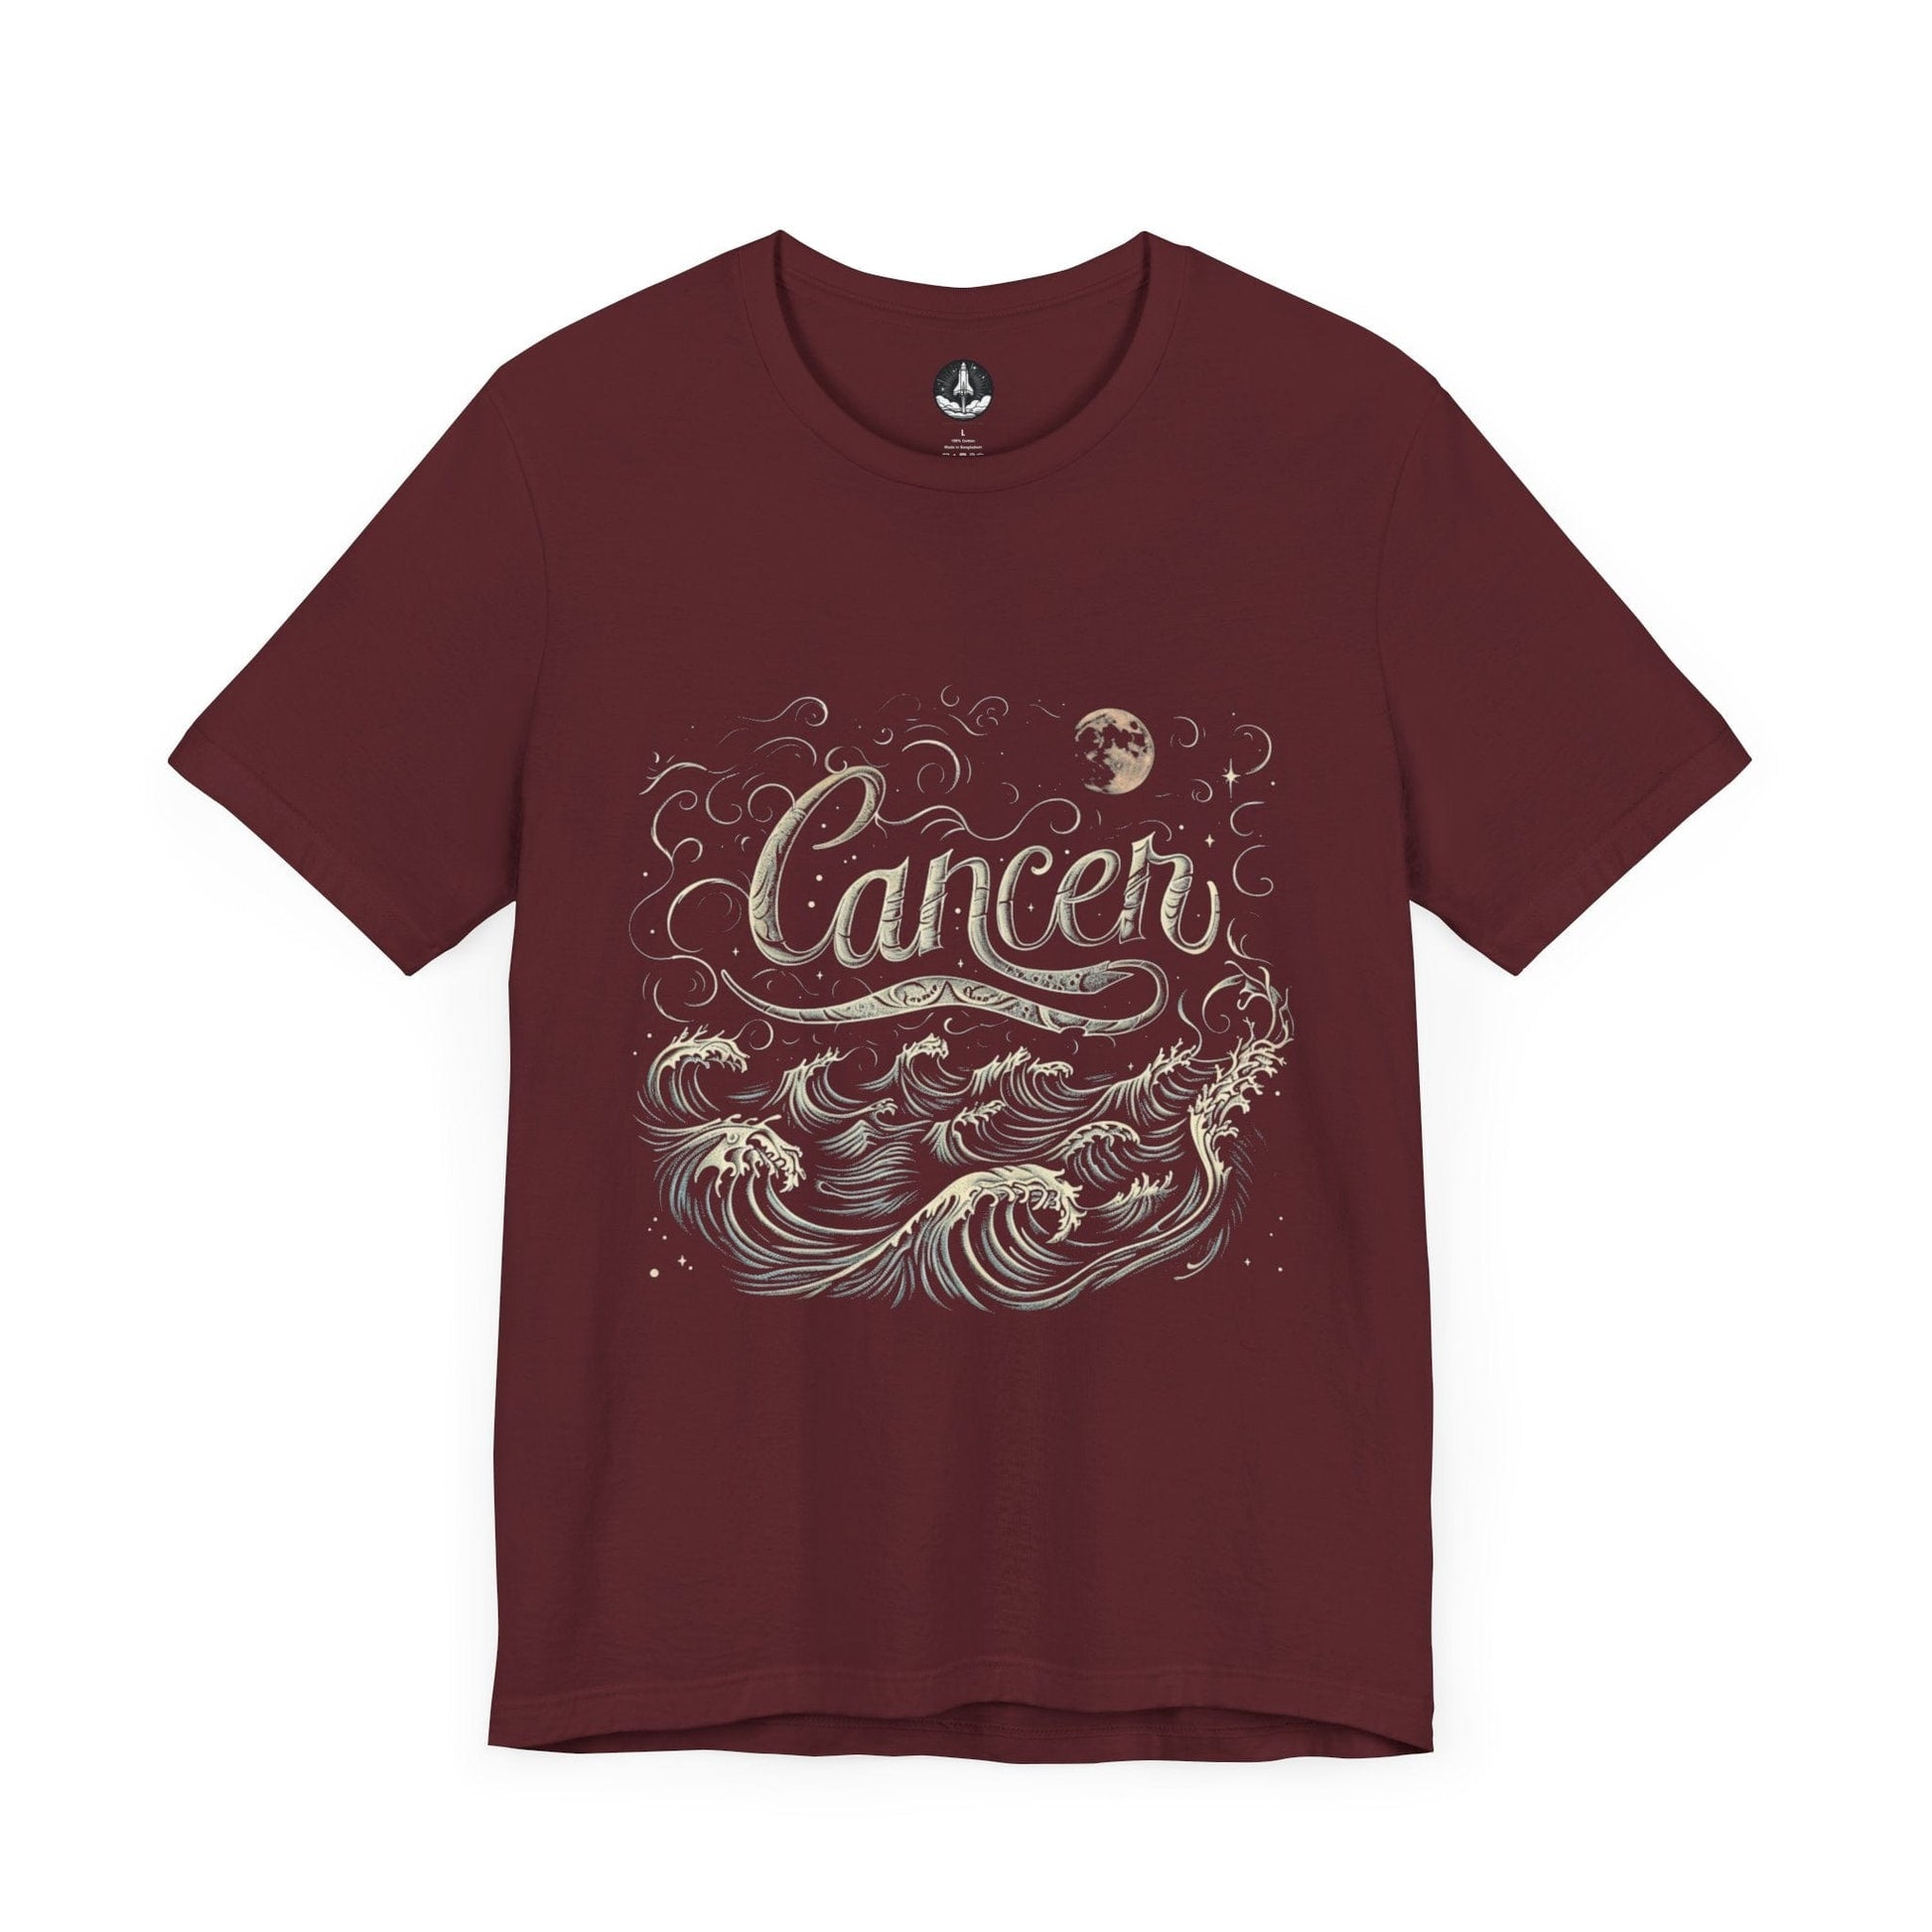 T-Shirt Maroon / S Moonlit Dreams Cancer T-Shirt